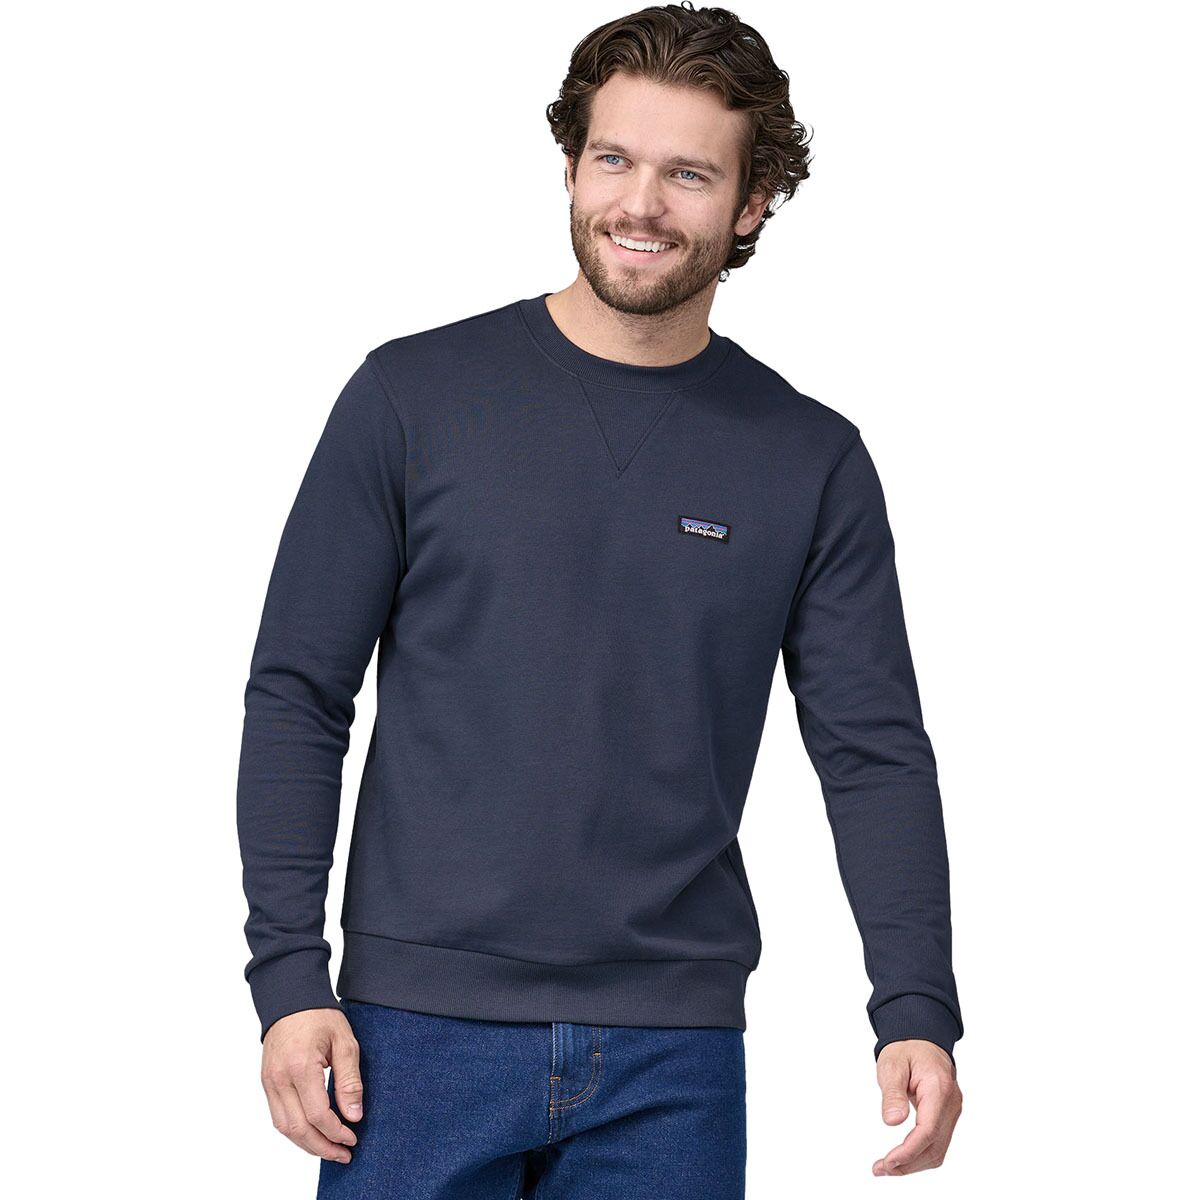 Patagonia Organic Certified Cotton Crewneck Sweatshirt - Men's